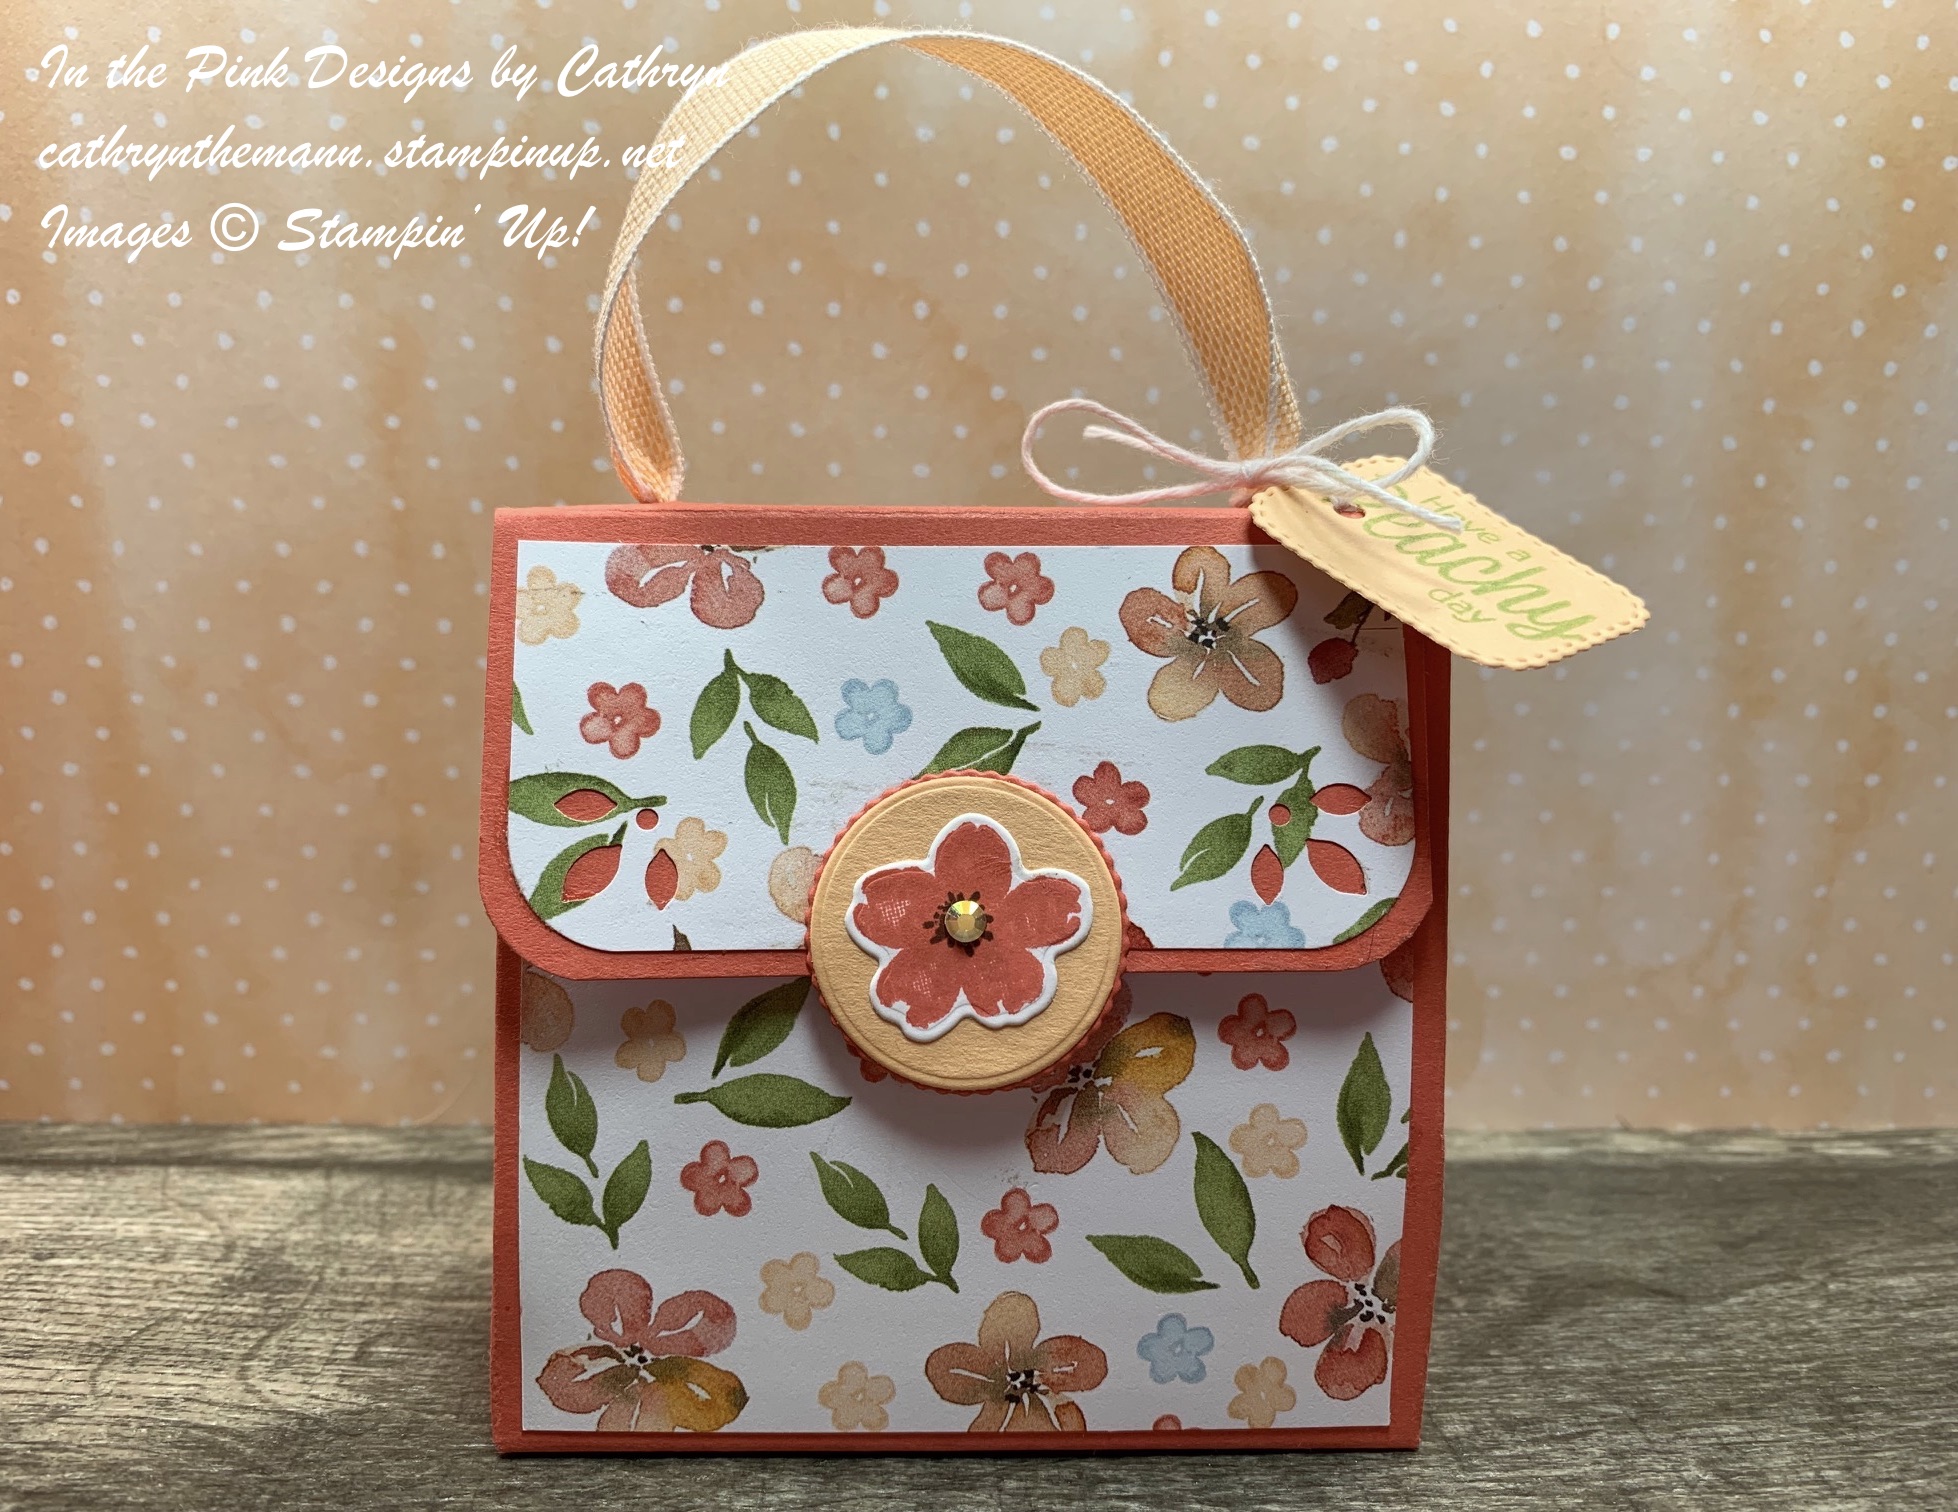 Paper Purse Craft Template | Paper purse, Diy paper purses, Purse crafts